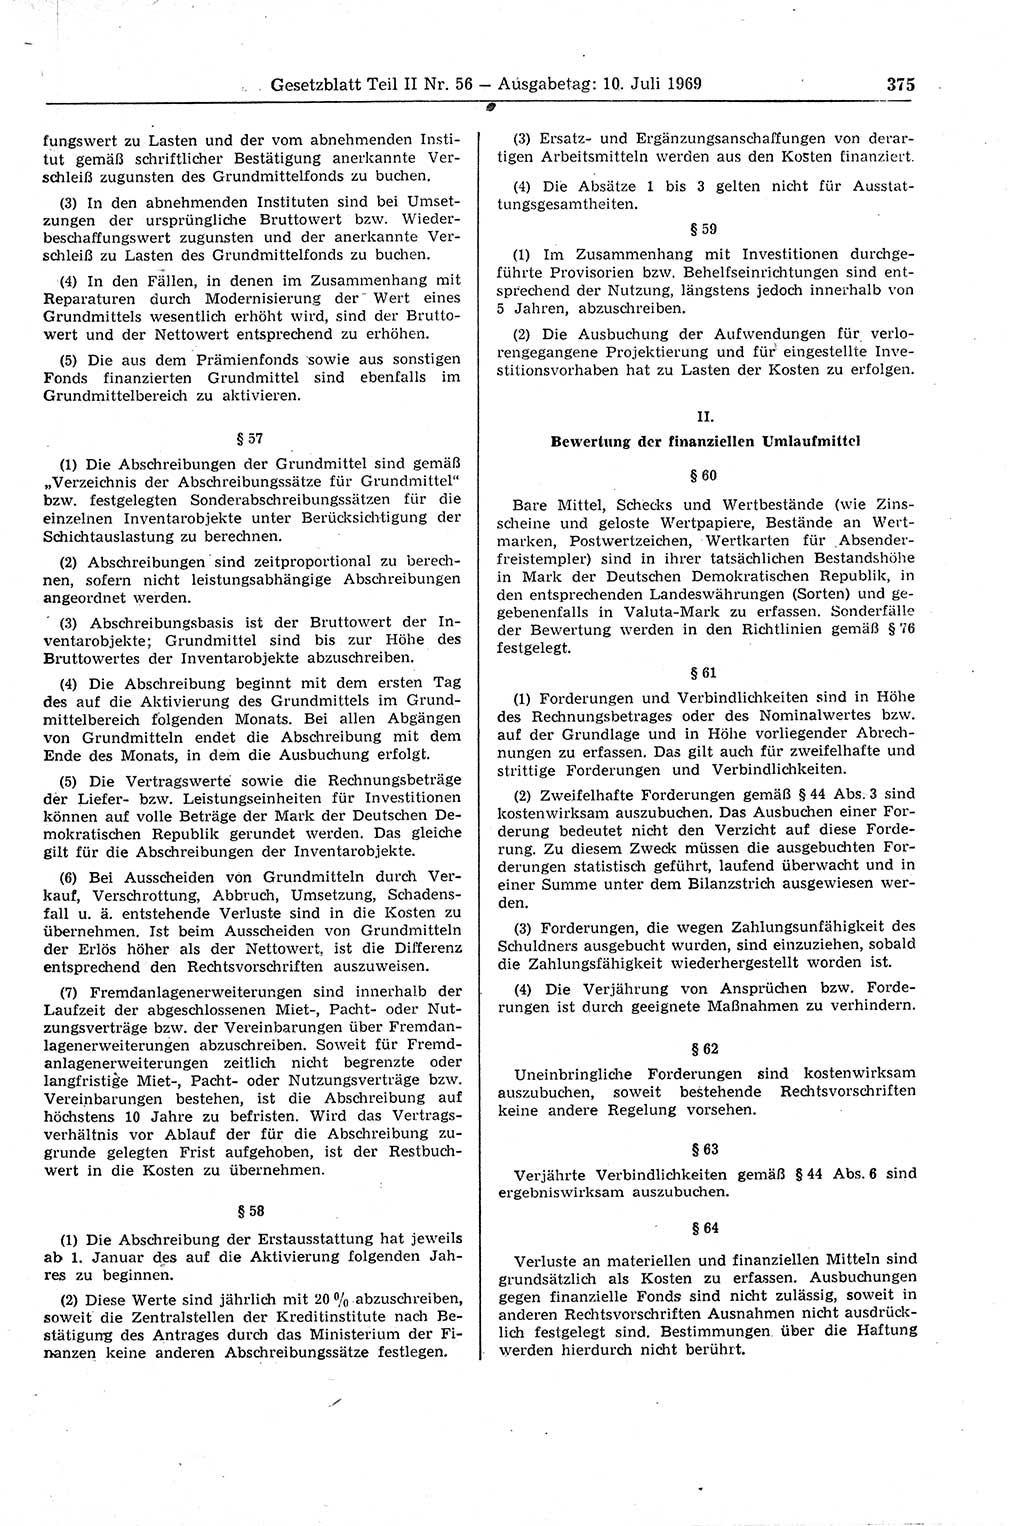 Gesetzblatt (GBl.) der Deutschen Demokratischen Republik (DDR) Teil ⅠⅠ 1969, Seite 375 (GBl. DDR ⅠⅠ 1969, S. 375)